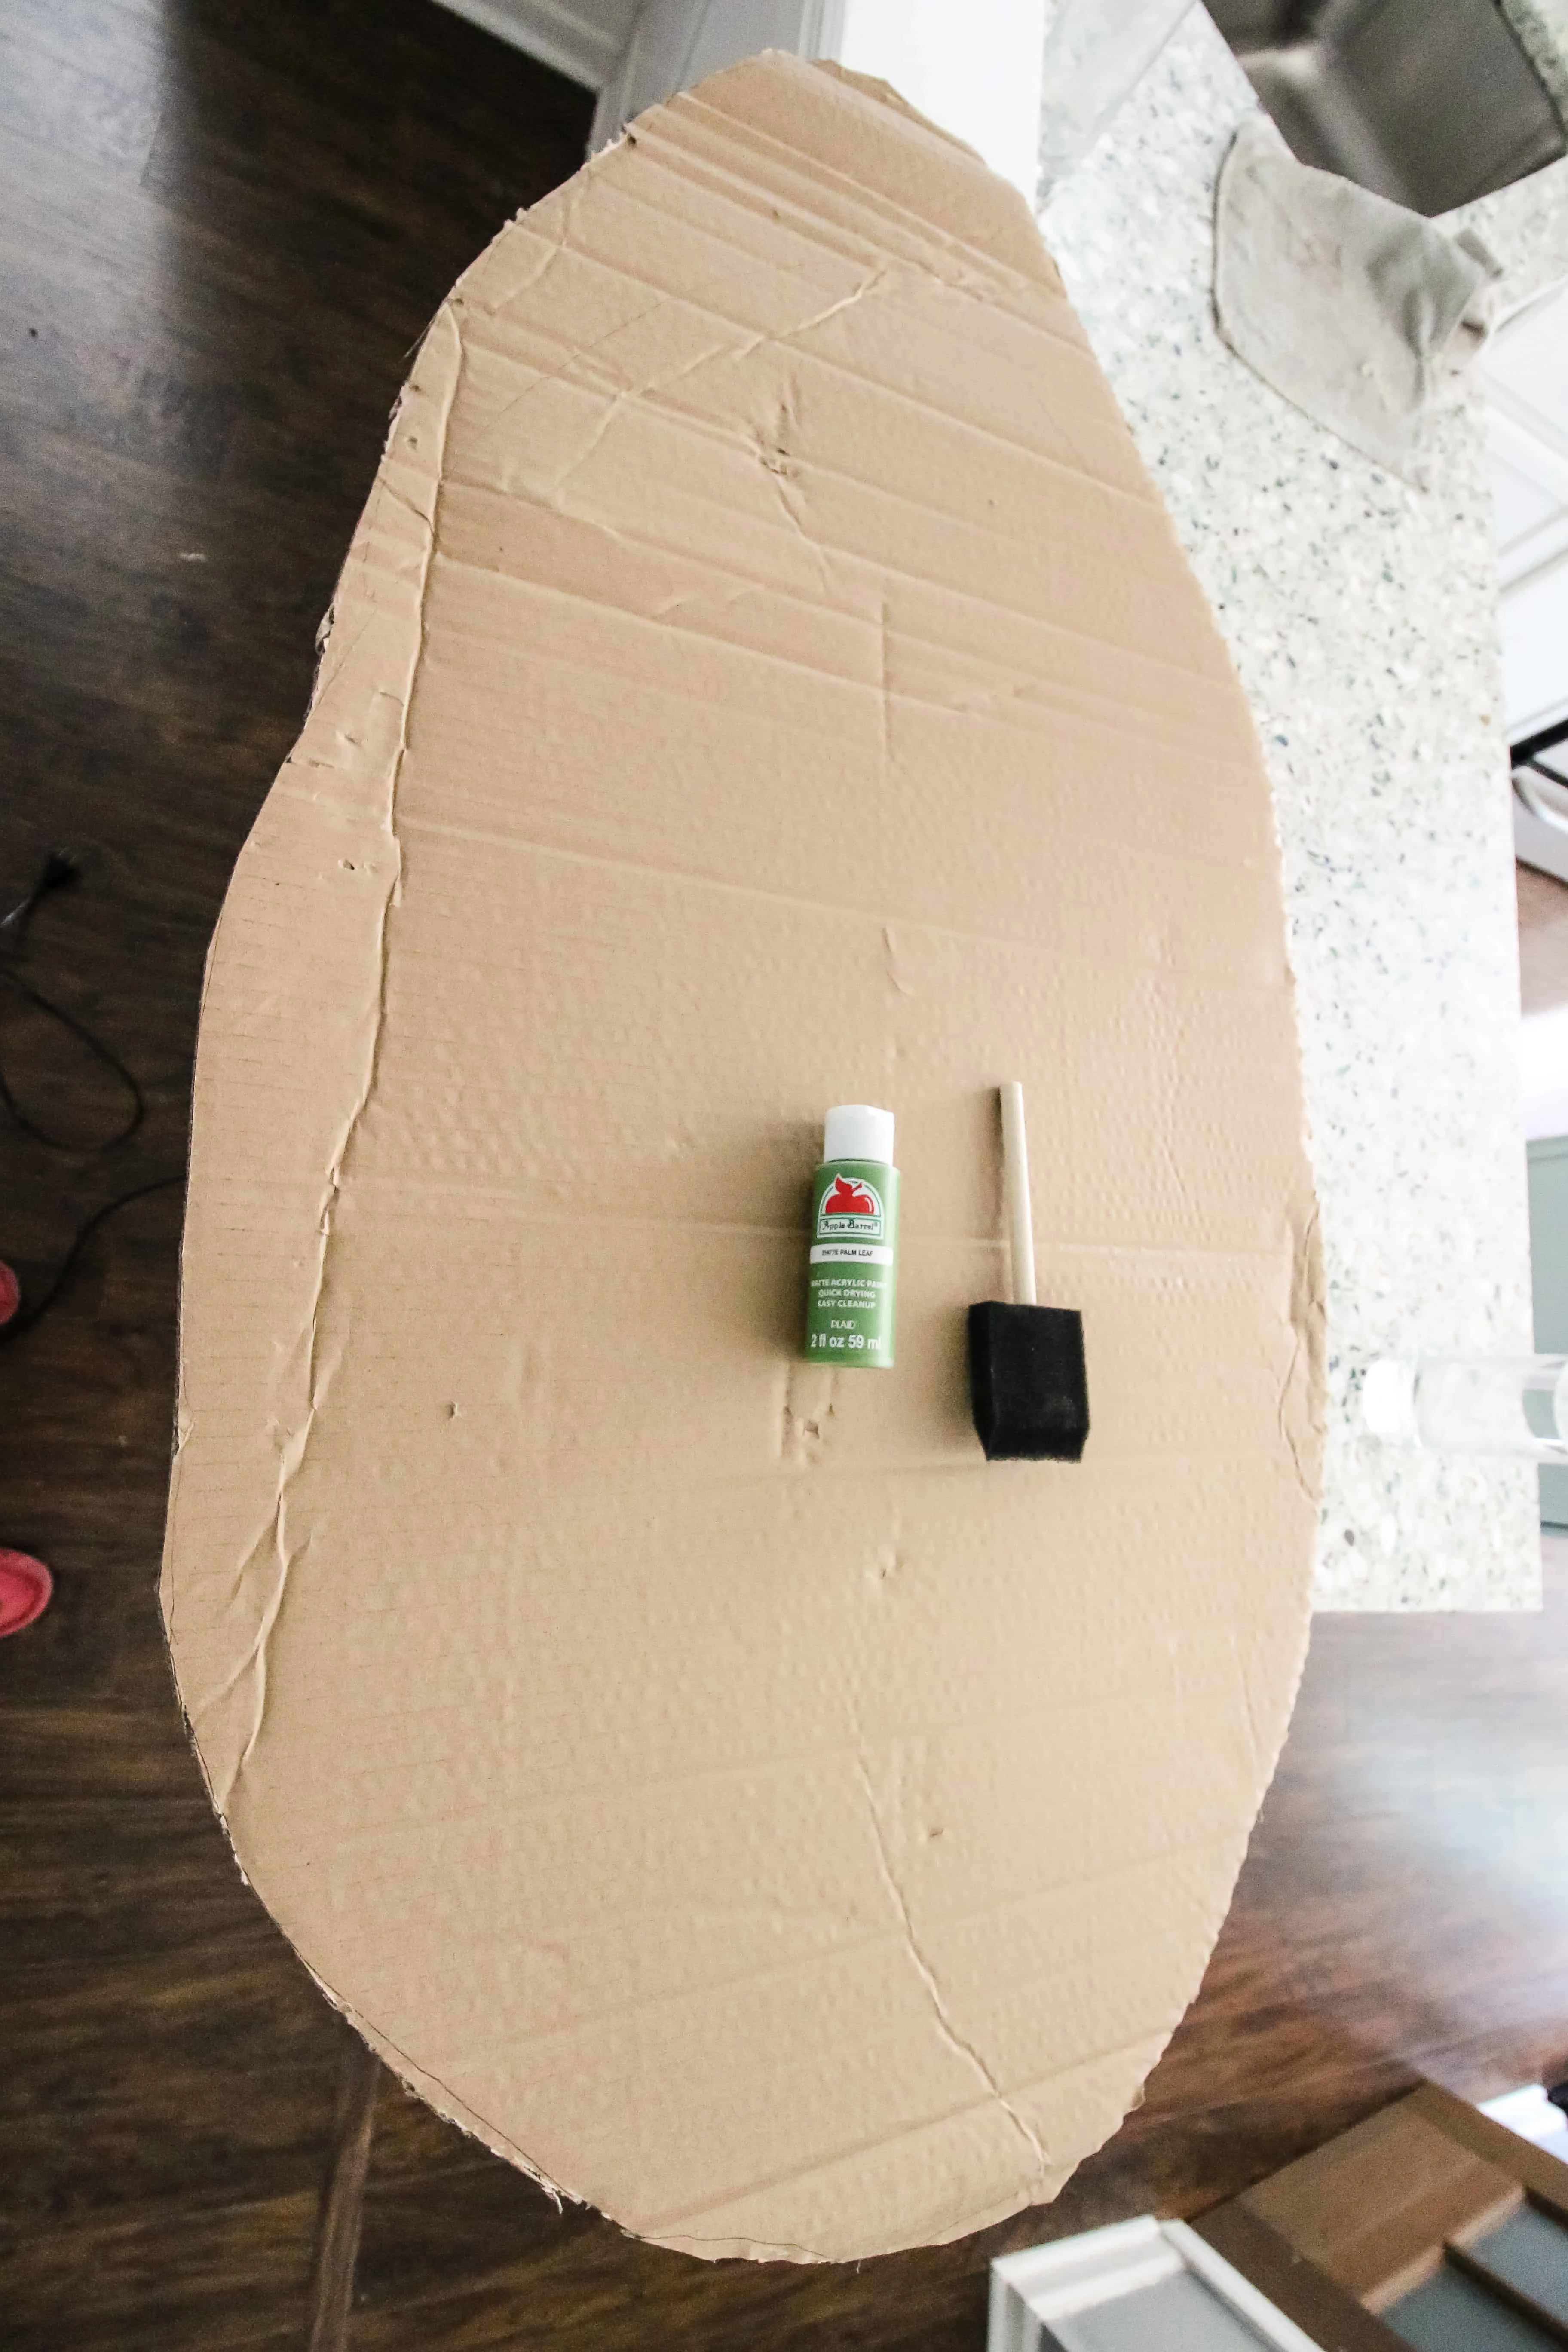 How to make a DIY Pregnant Avocado Costume